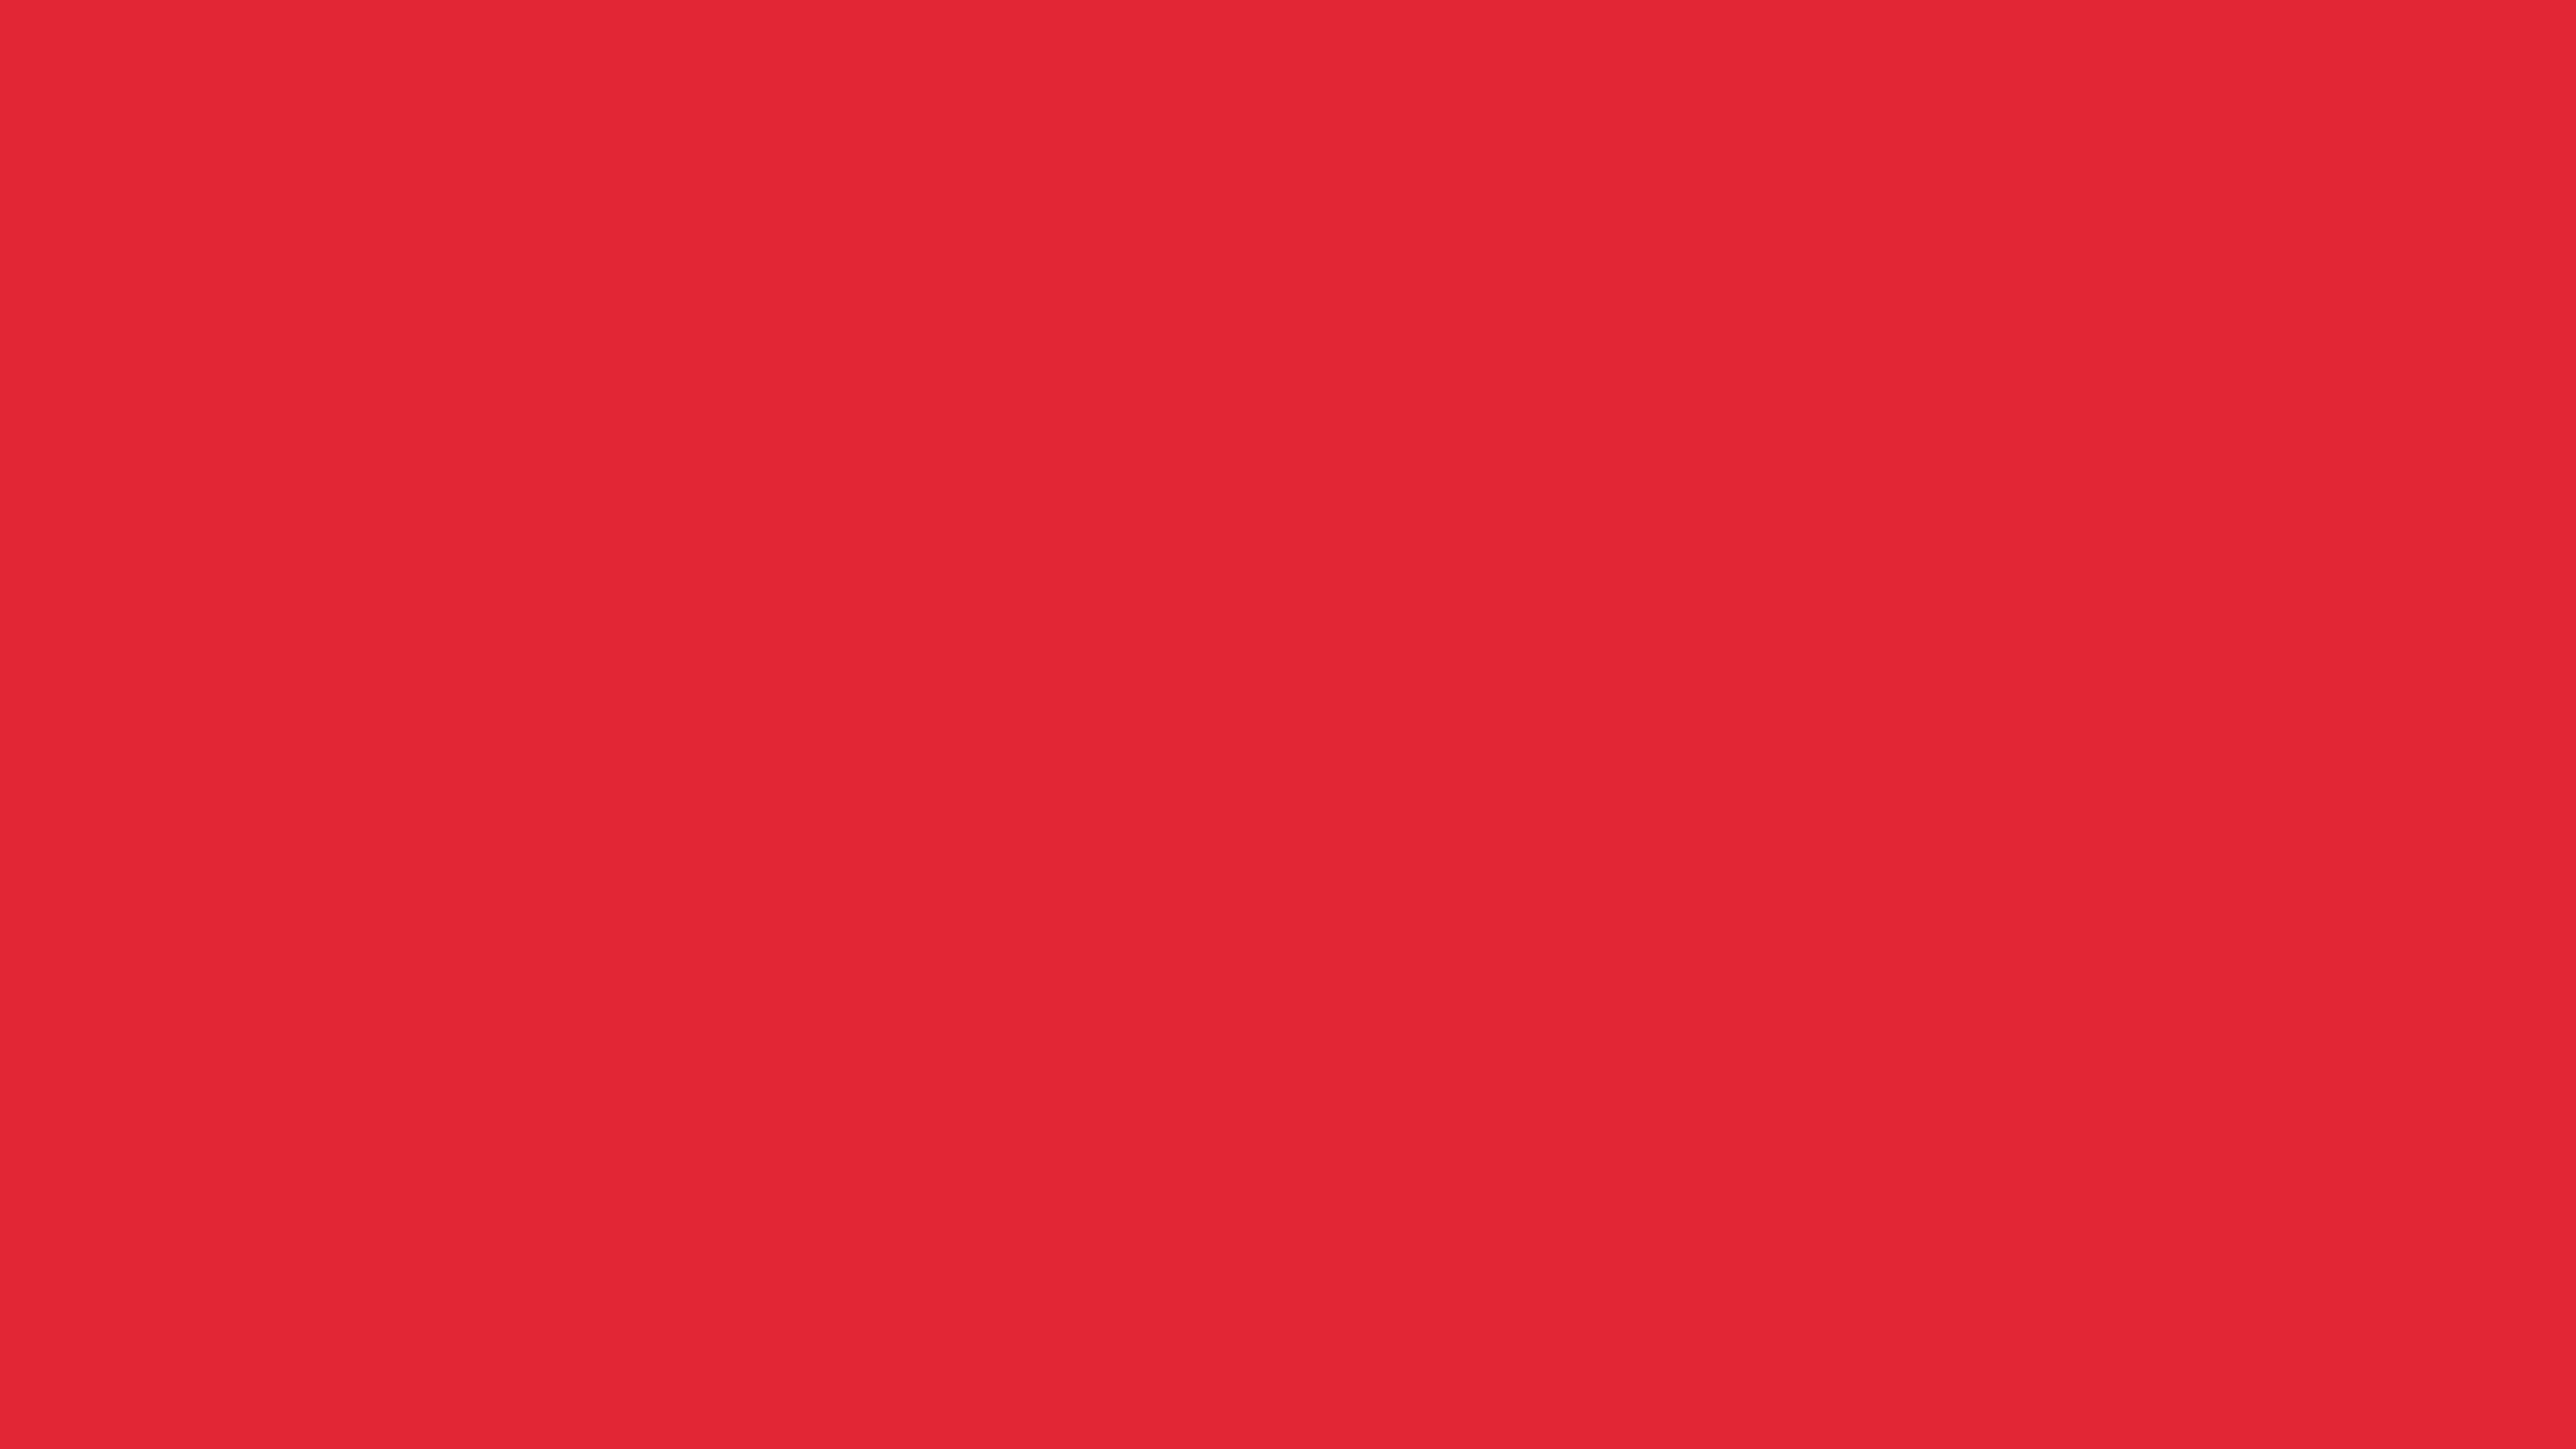 7680x4320 Alizarin Crimson Solid Color Background